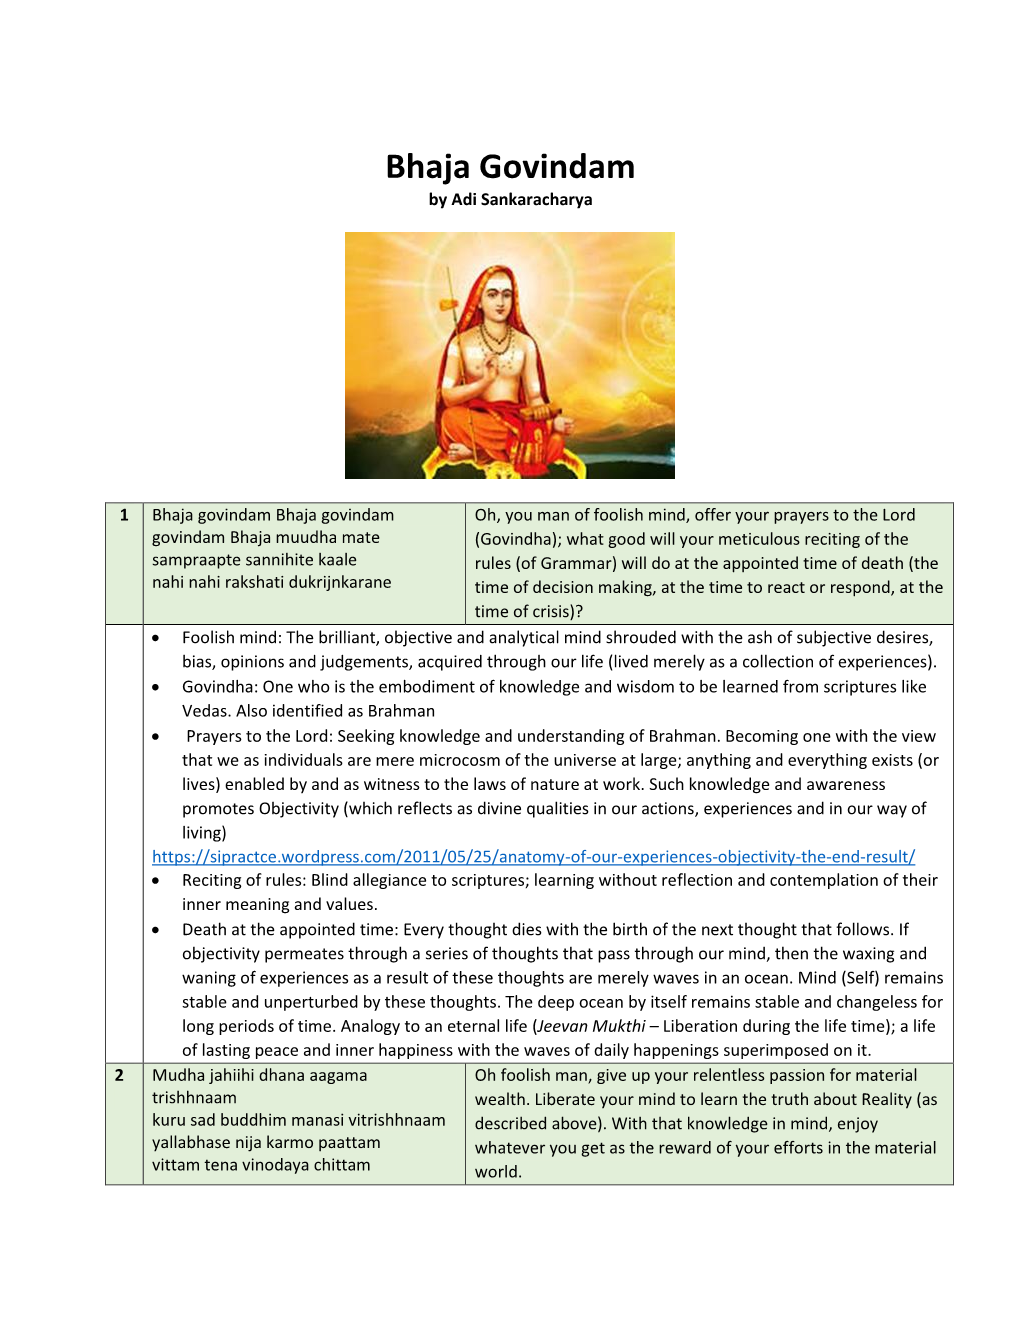 Bhaja Govindam by Adi Sankaracharya